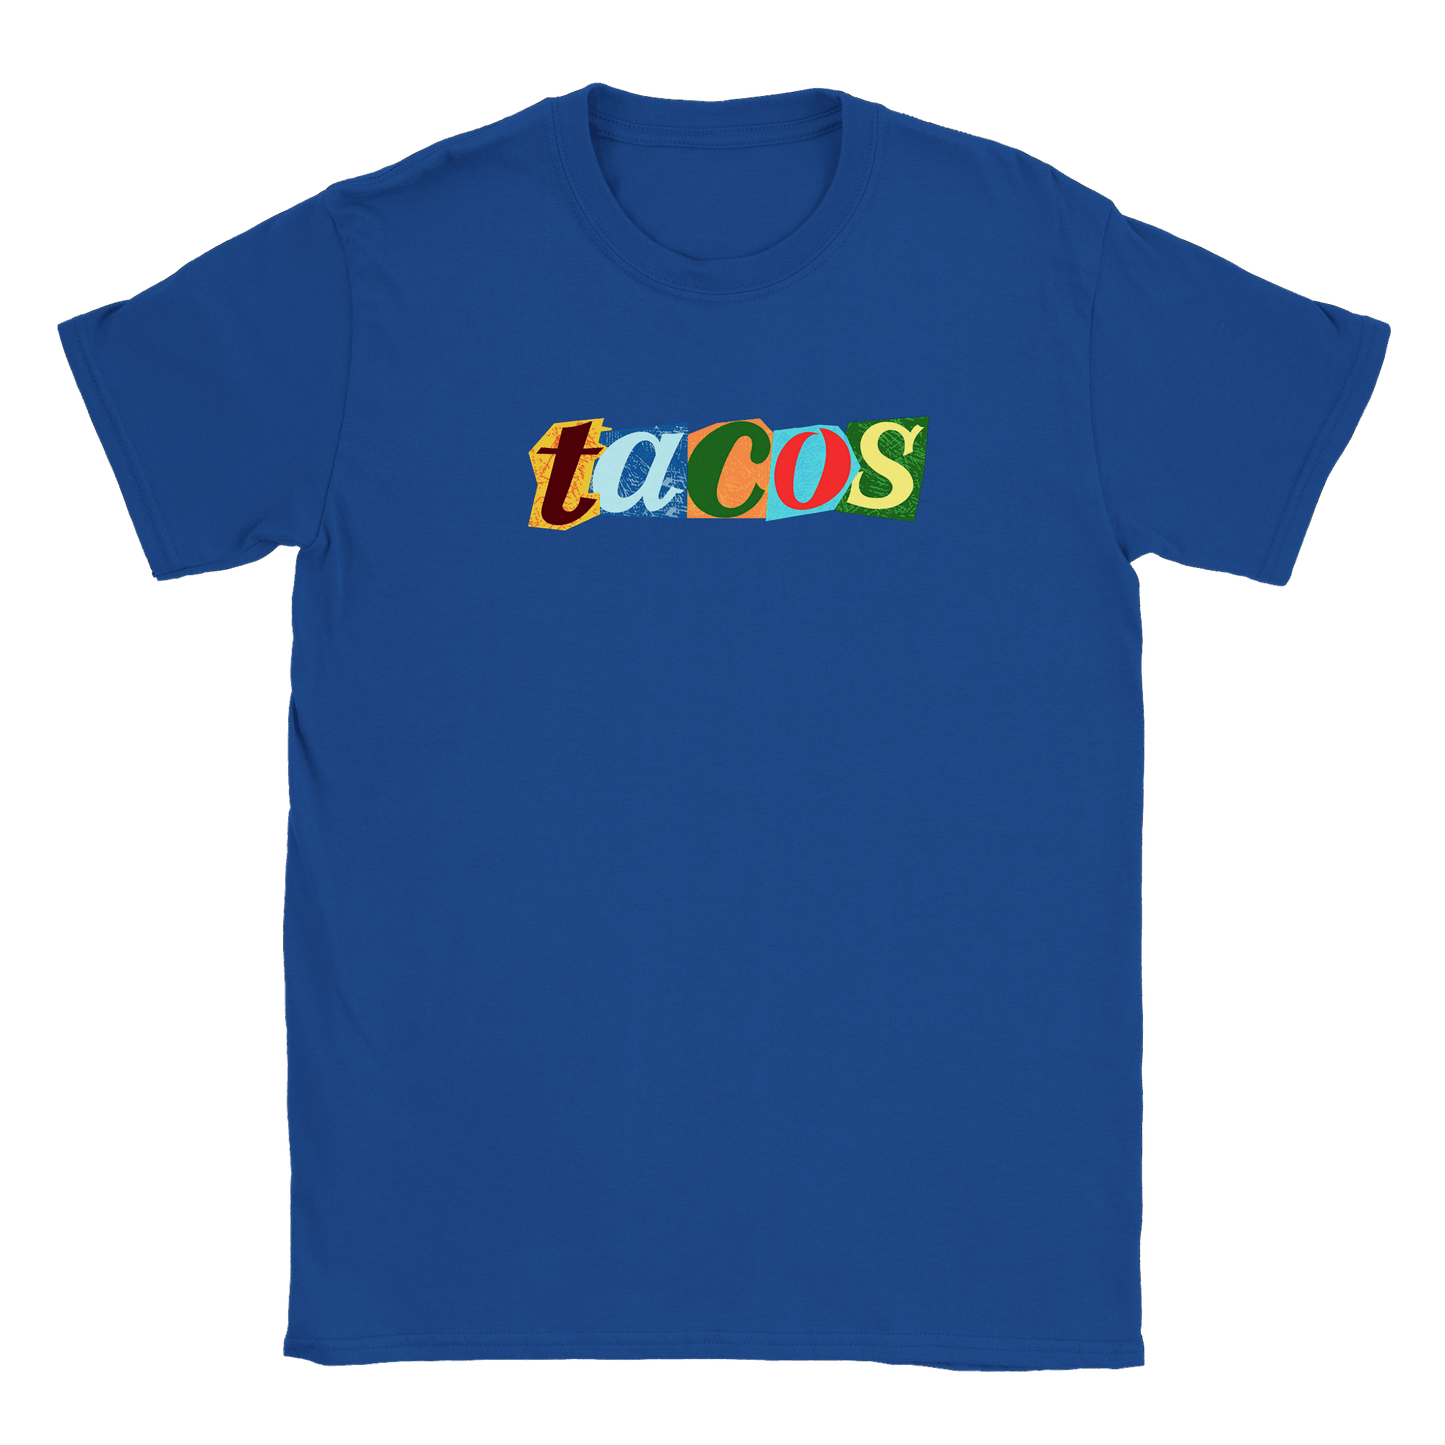 Tacos - T-shirt Royal